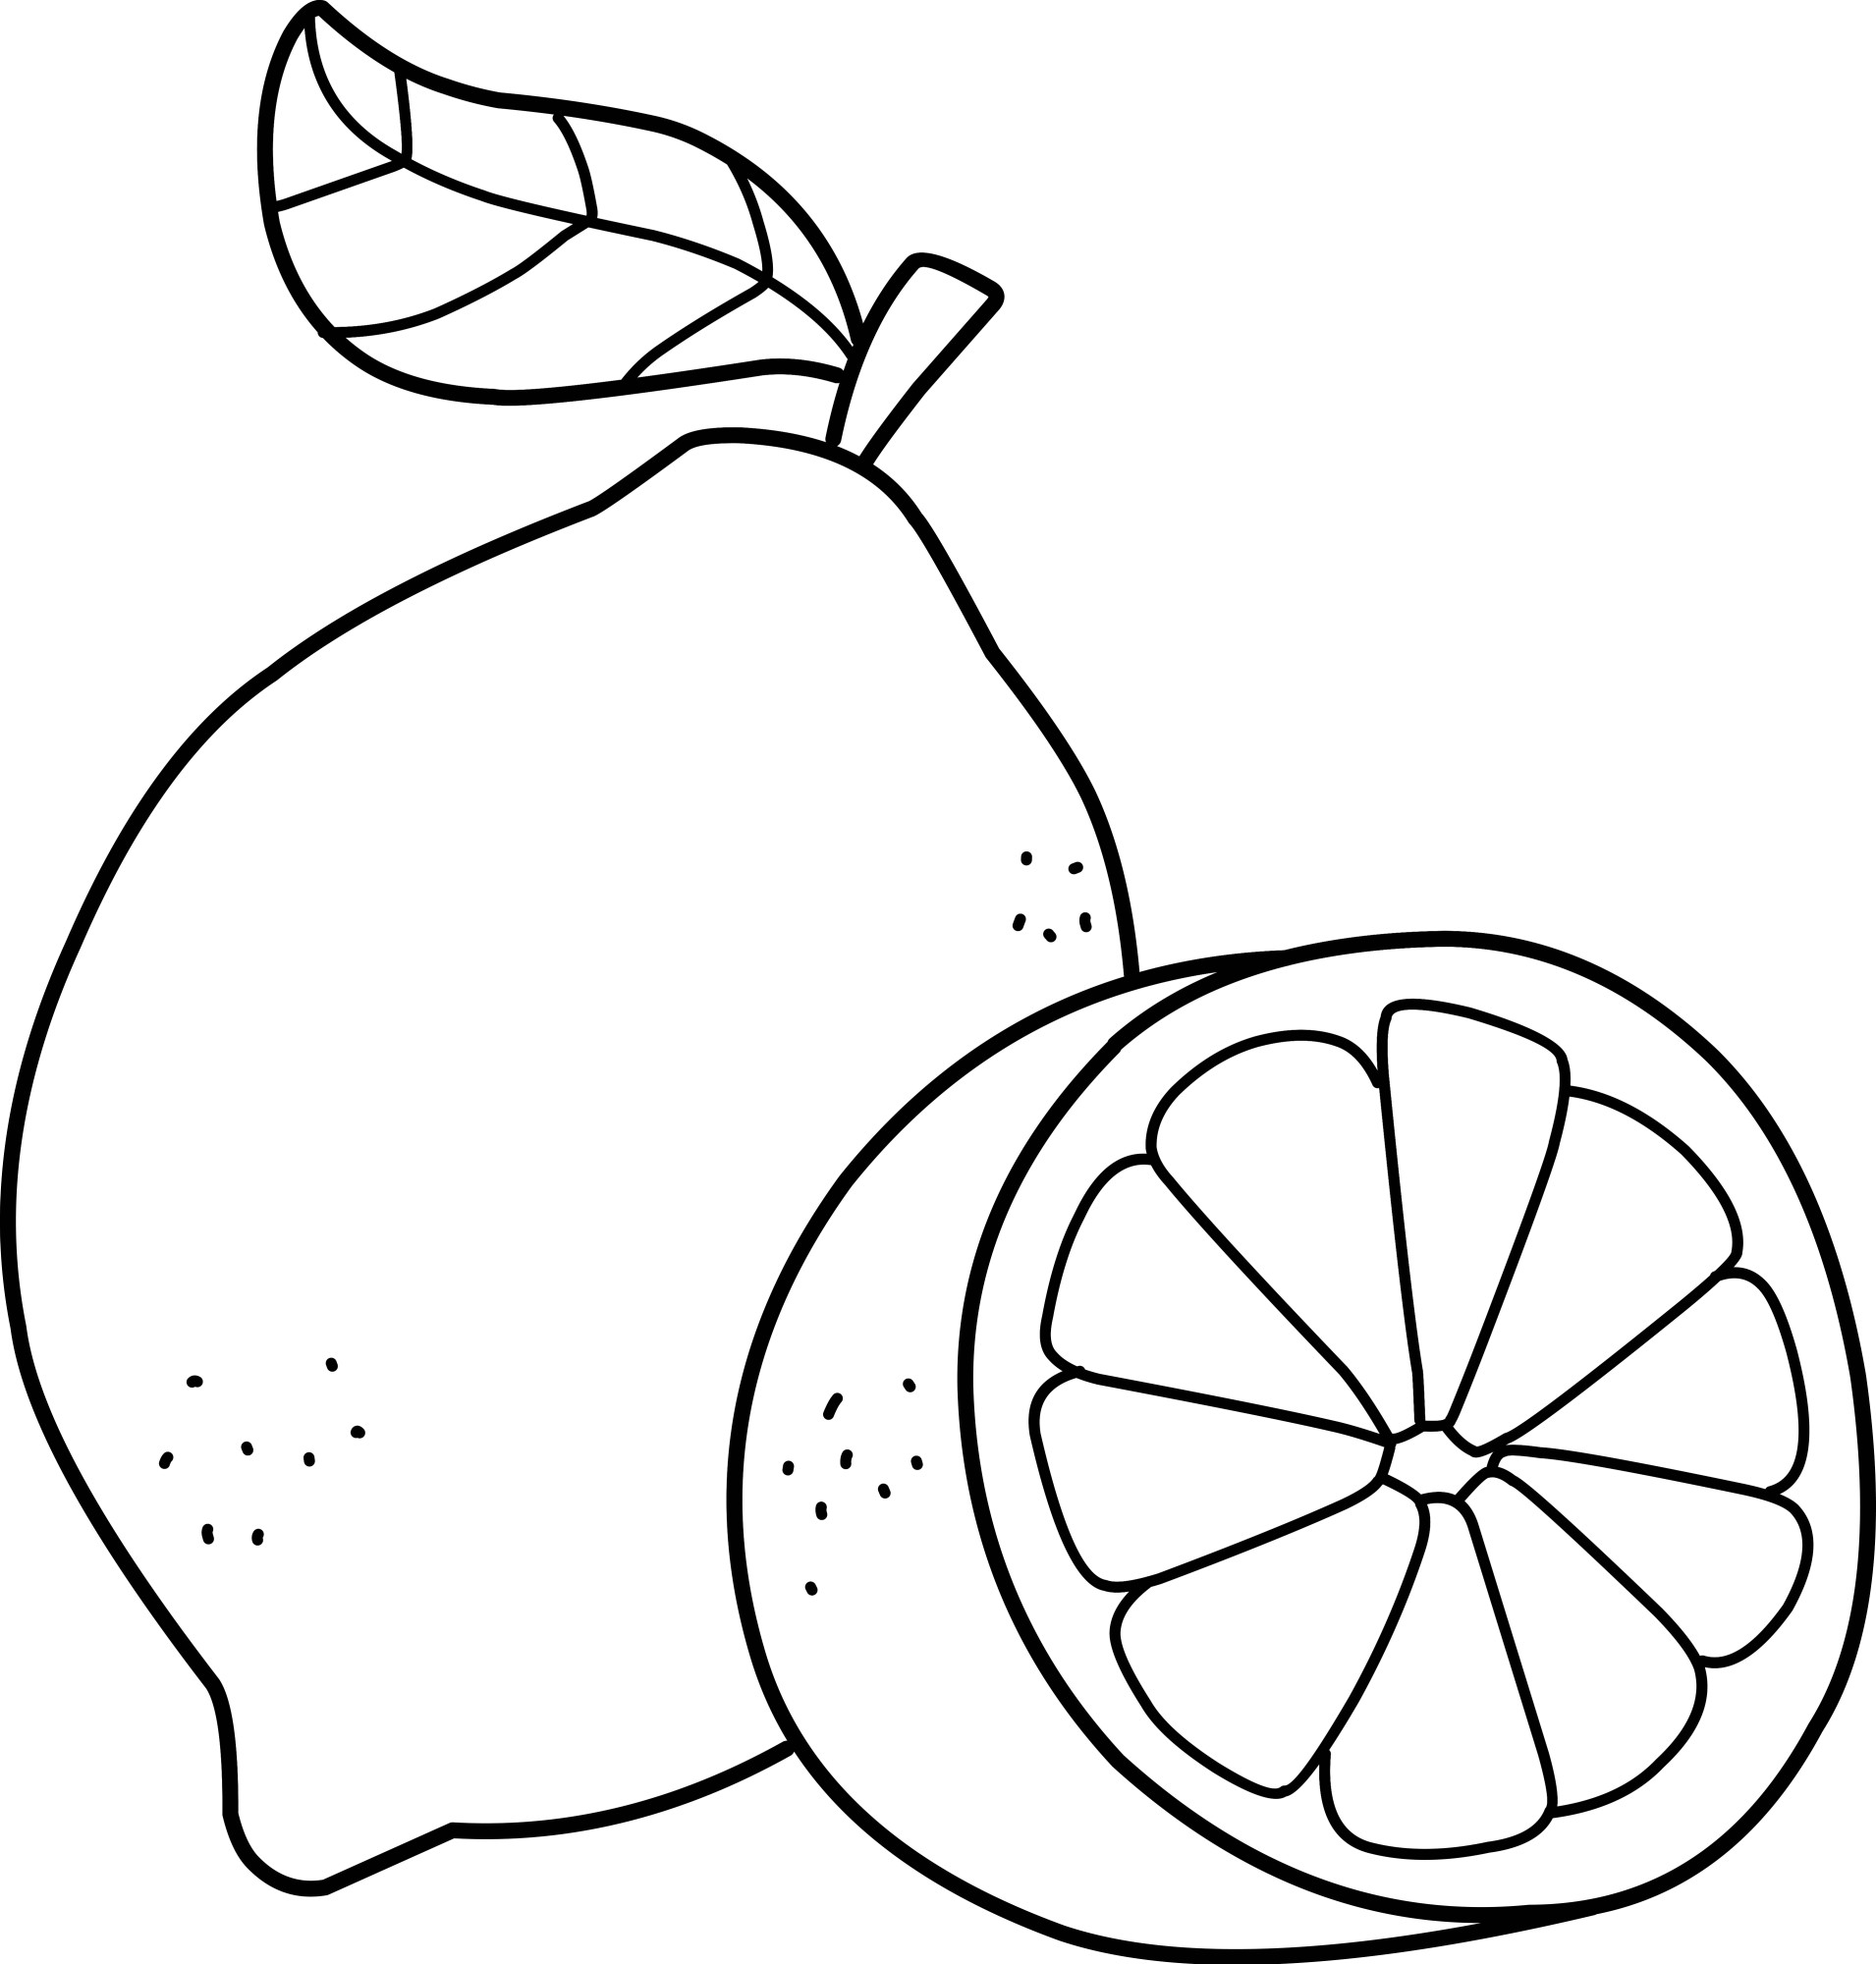 Раскраска для детей: кислый лимон с половинкой